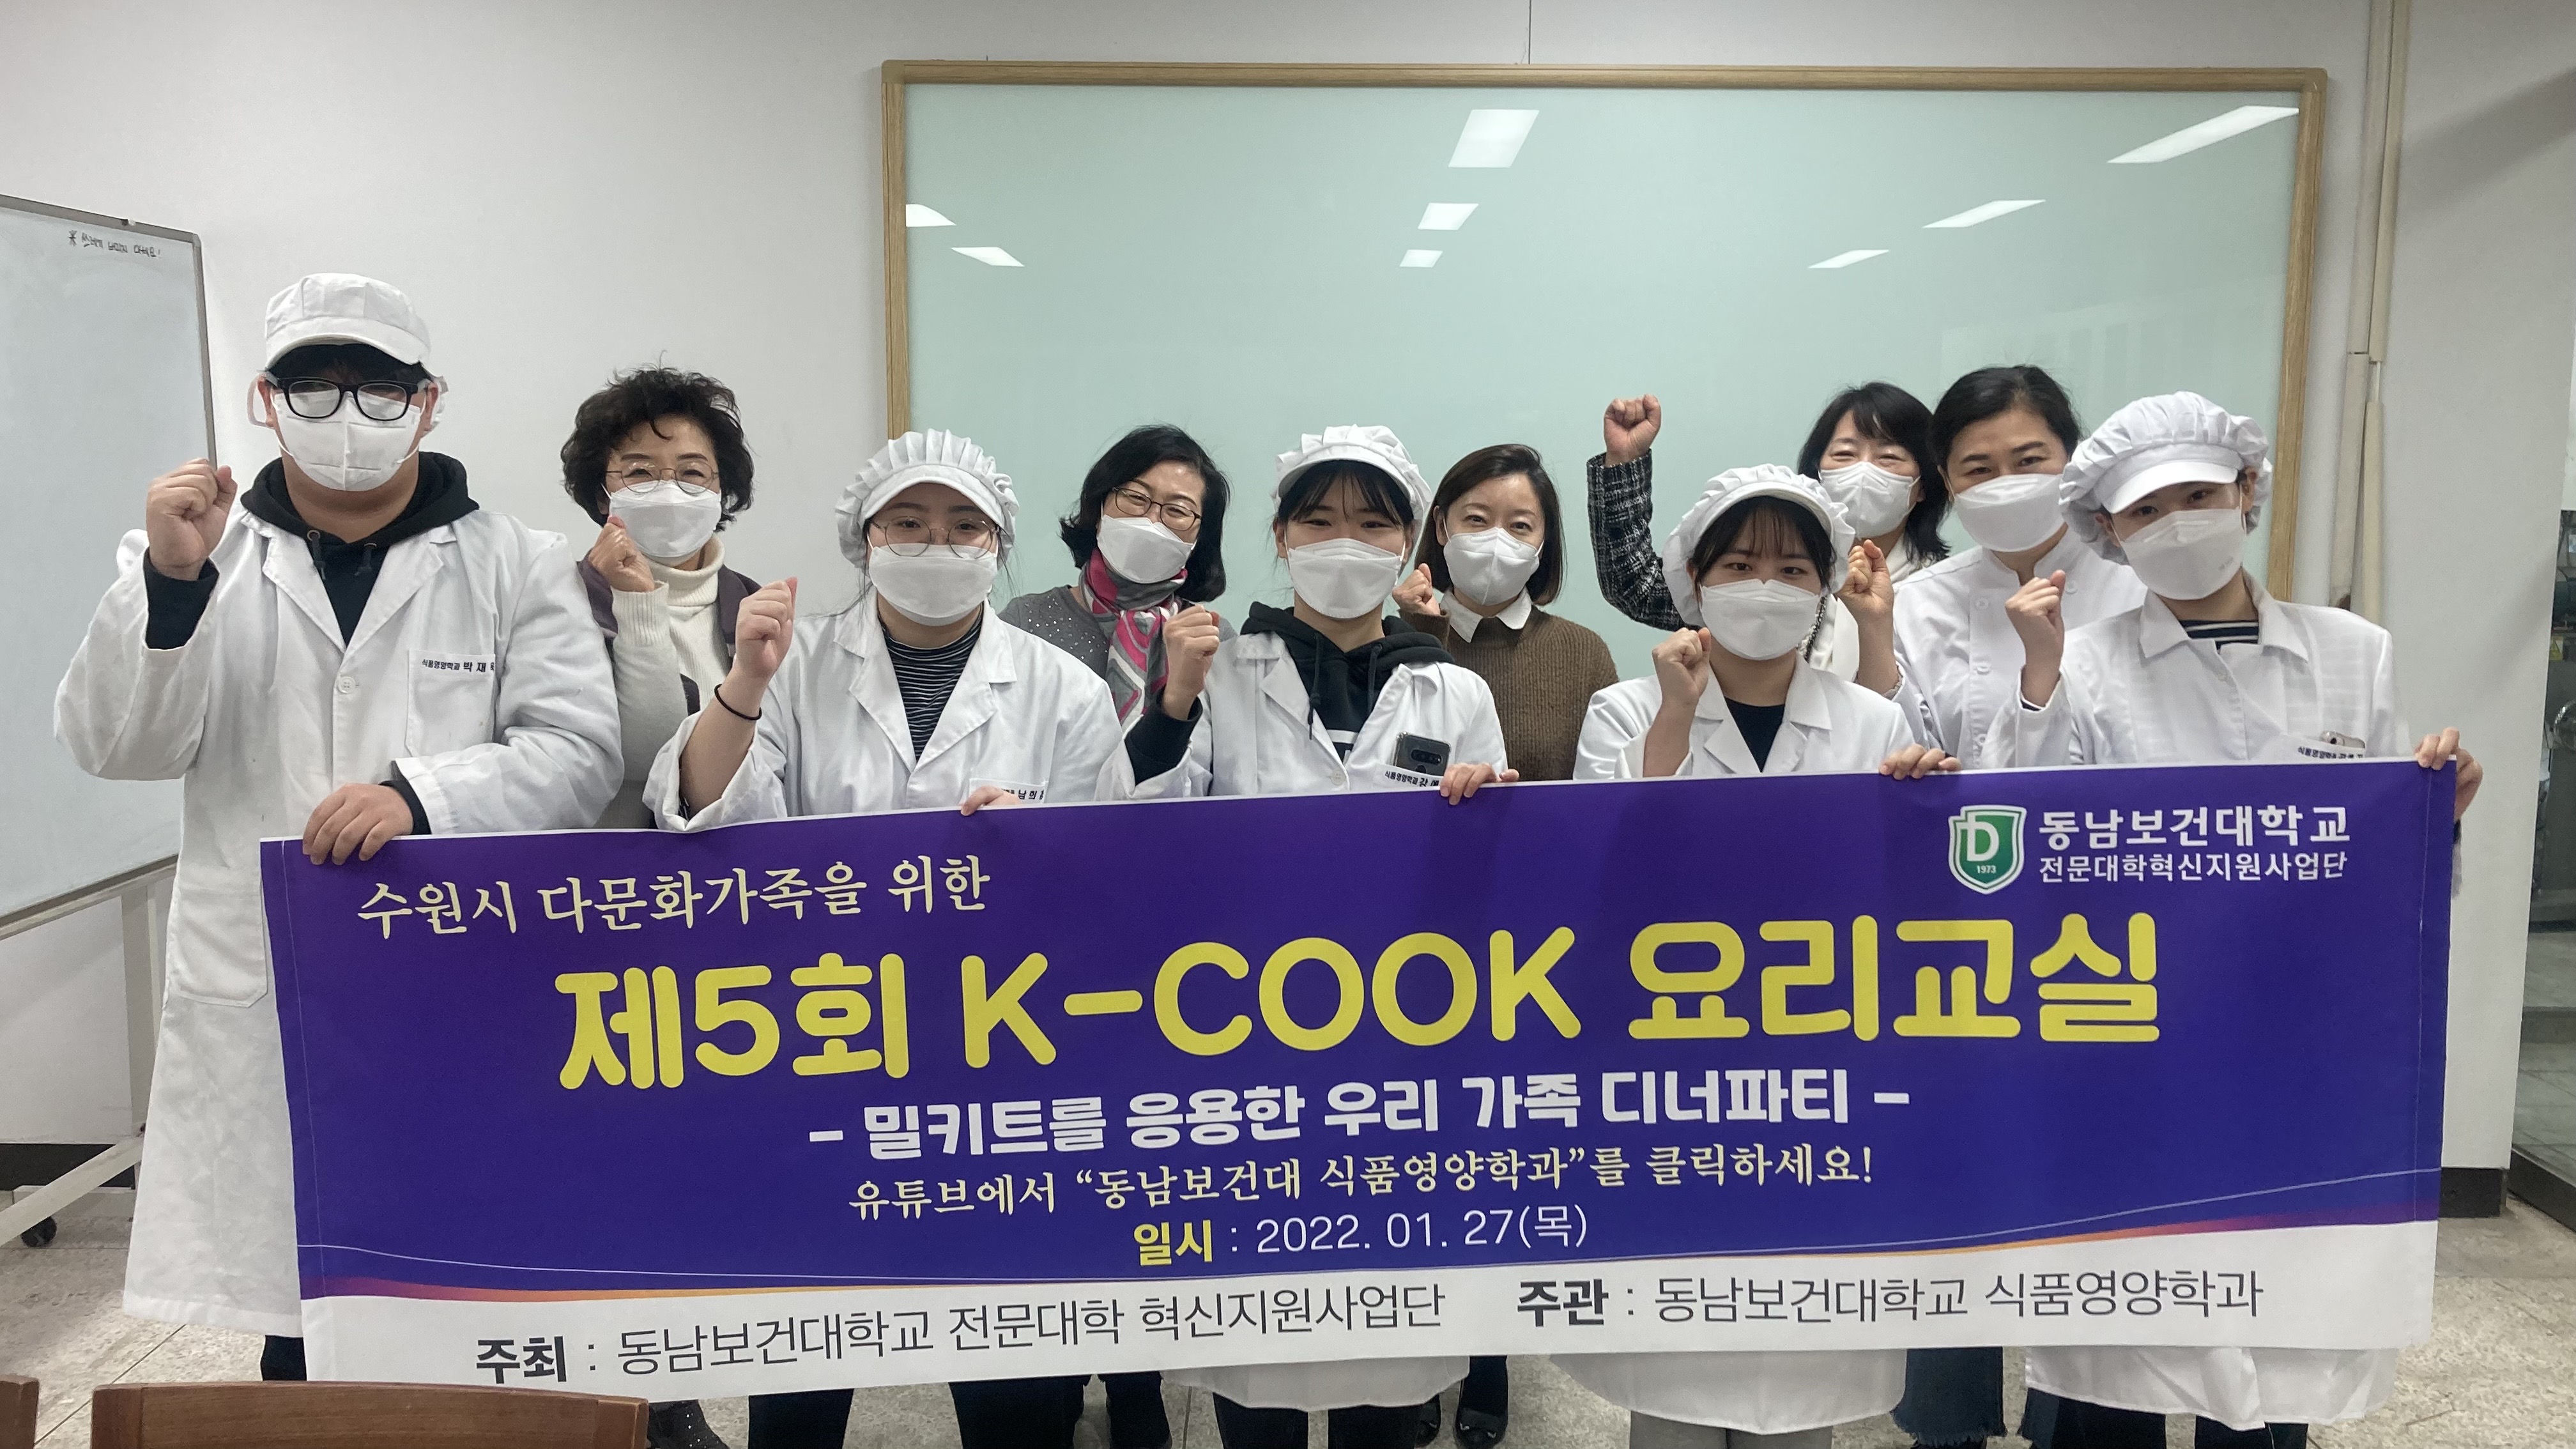 식품영양학과, 다문화가족지원 위한 제 5회 K-COOK 요리교실 개최 첨부 이미지